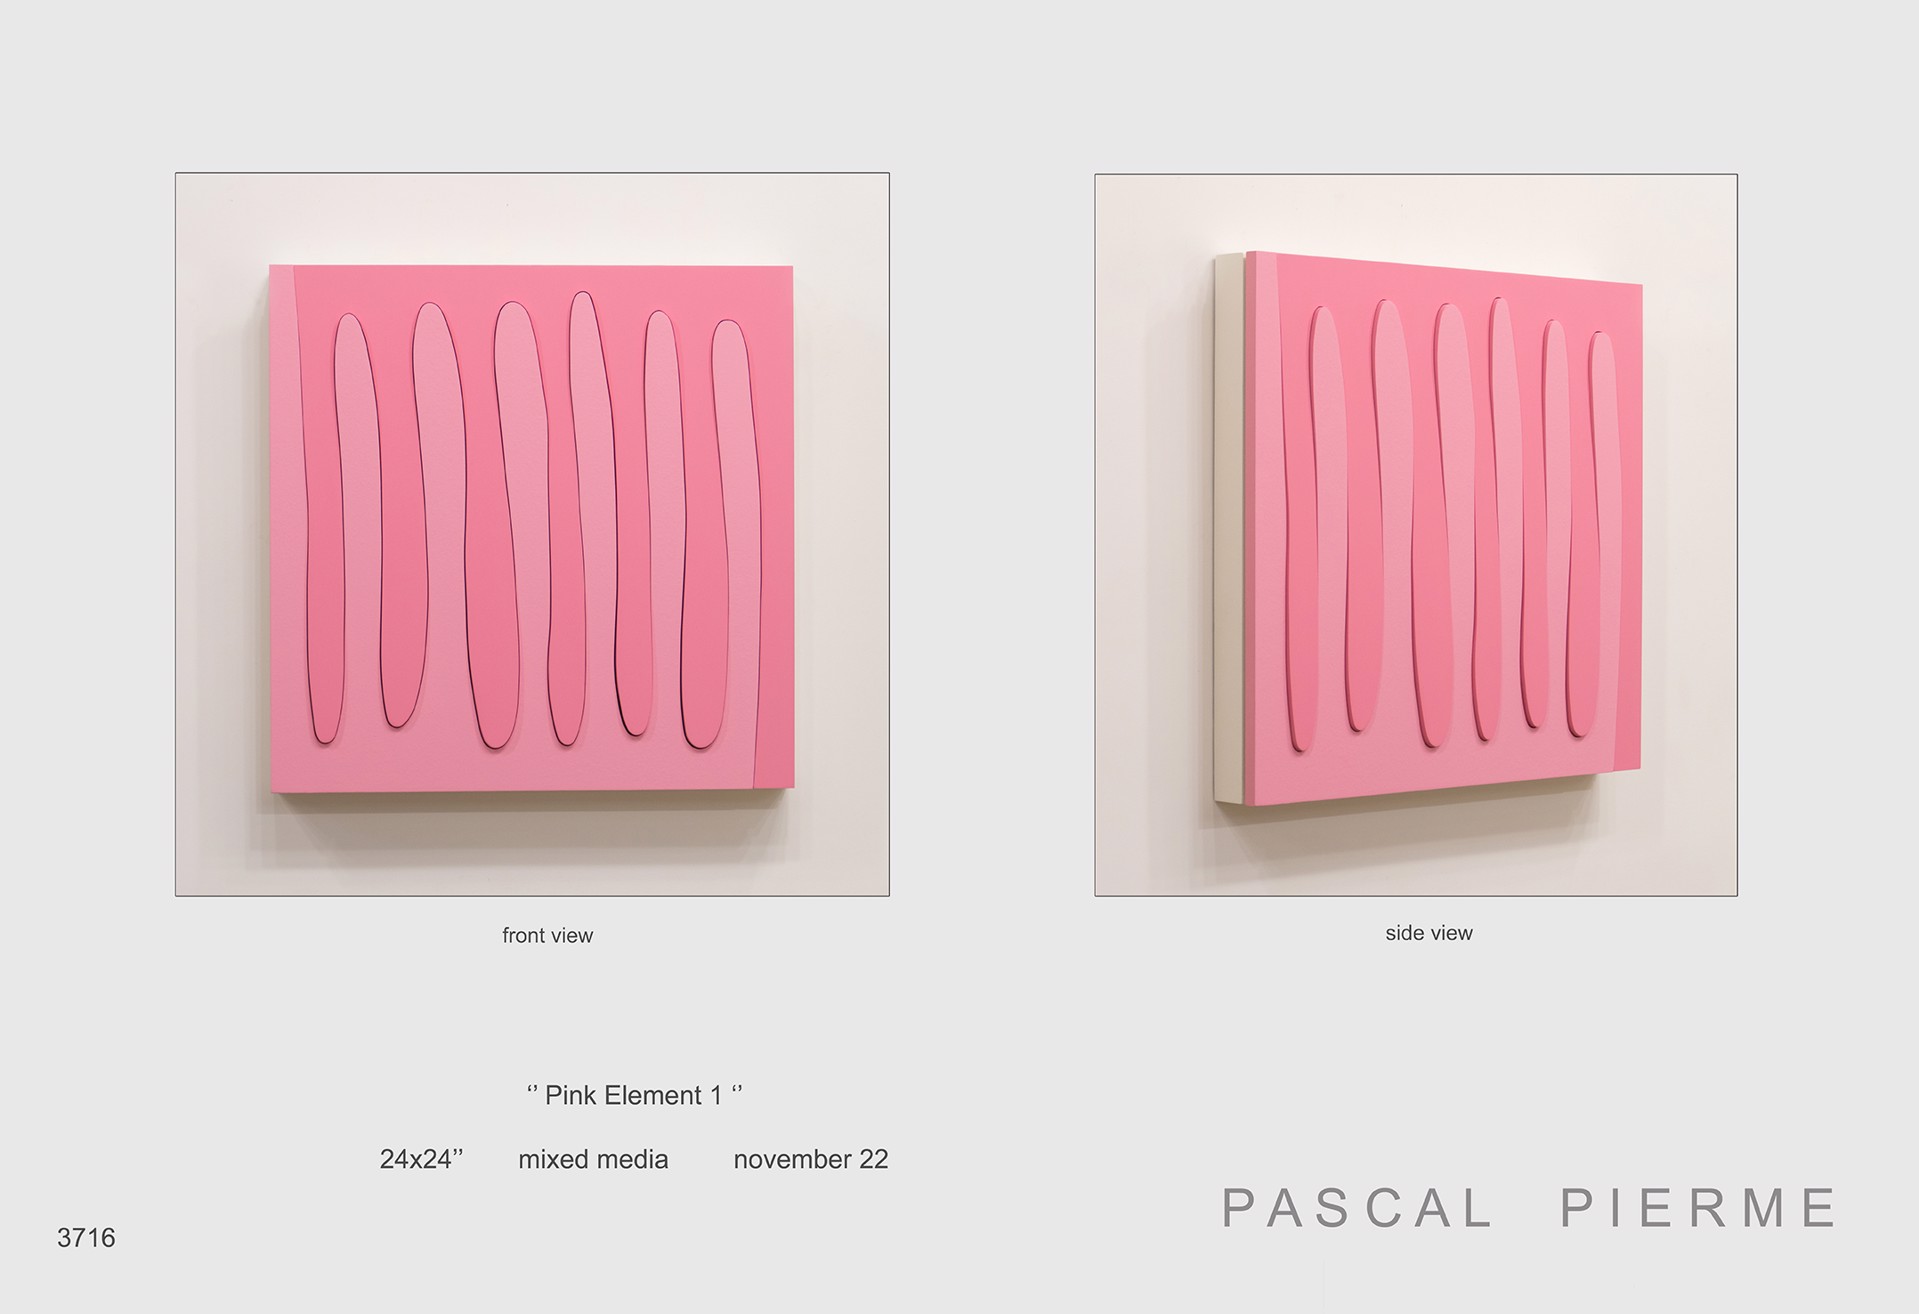 Pink Element 1 by Pascal Piermé